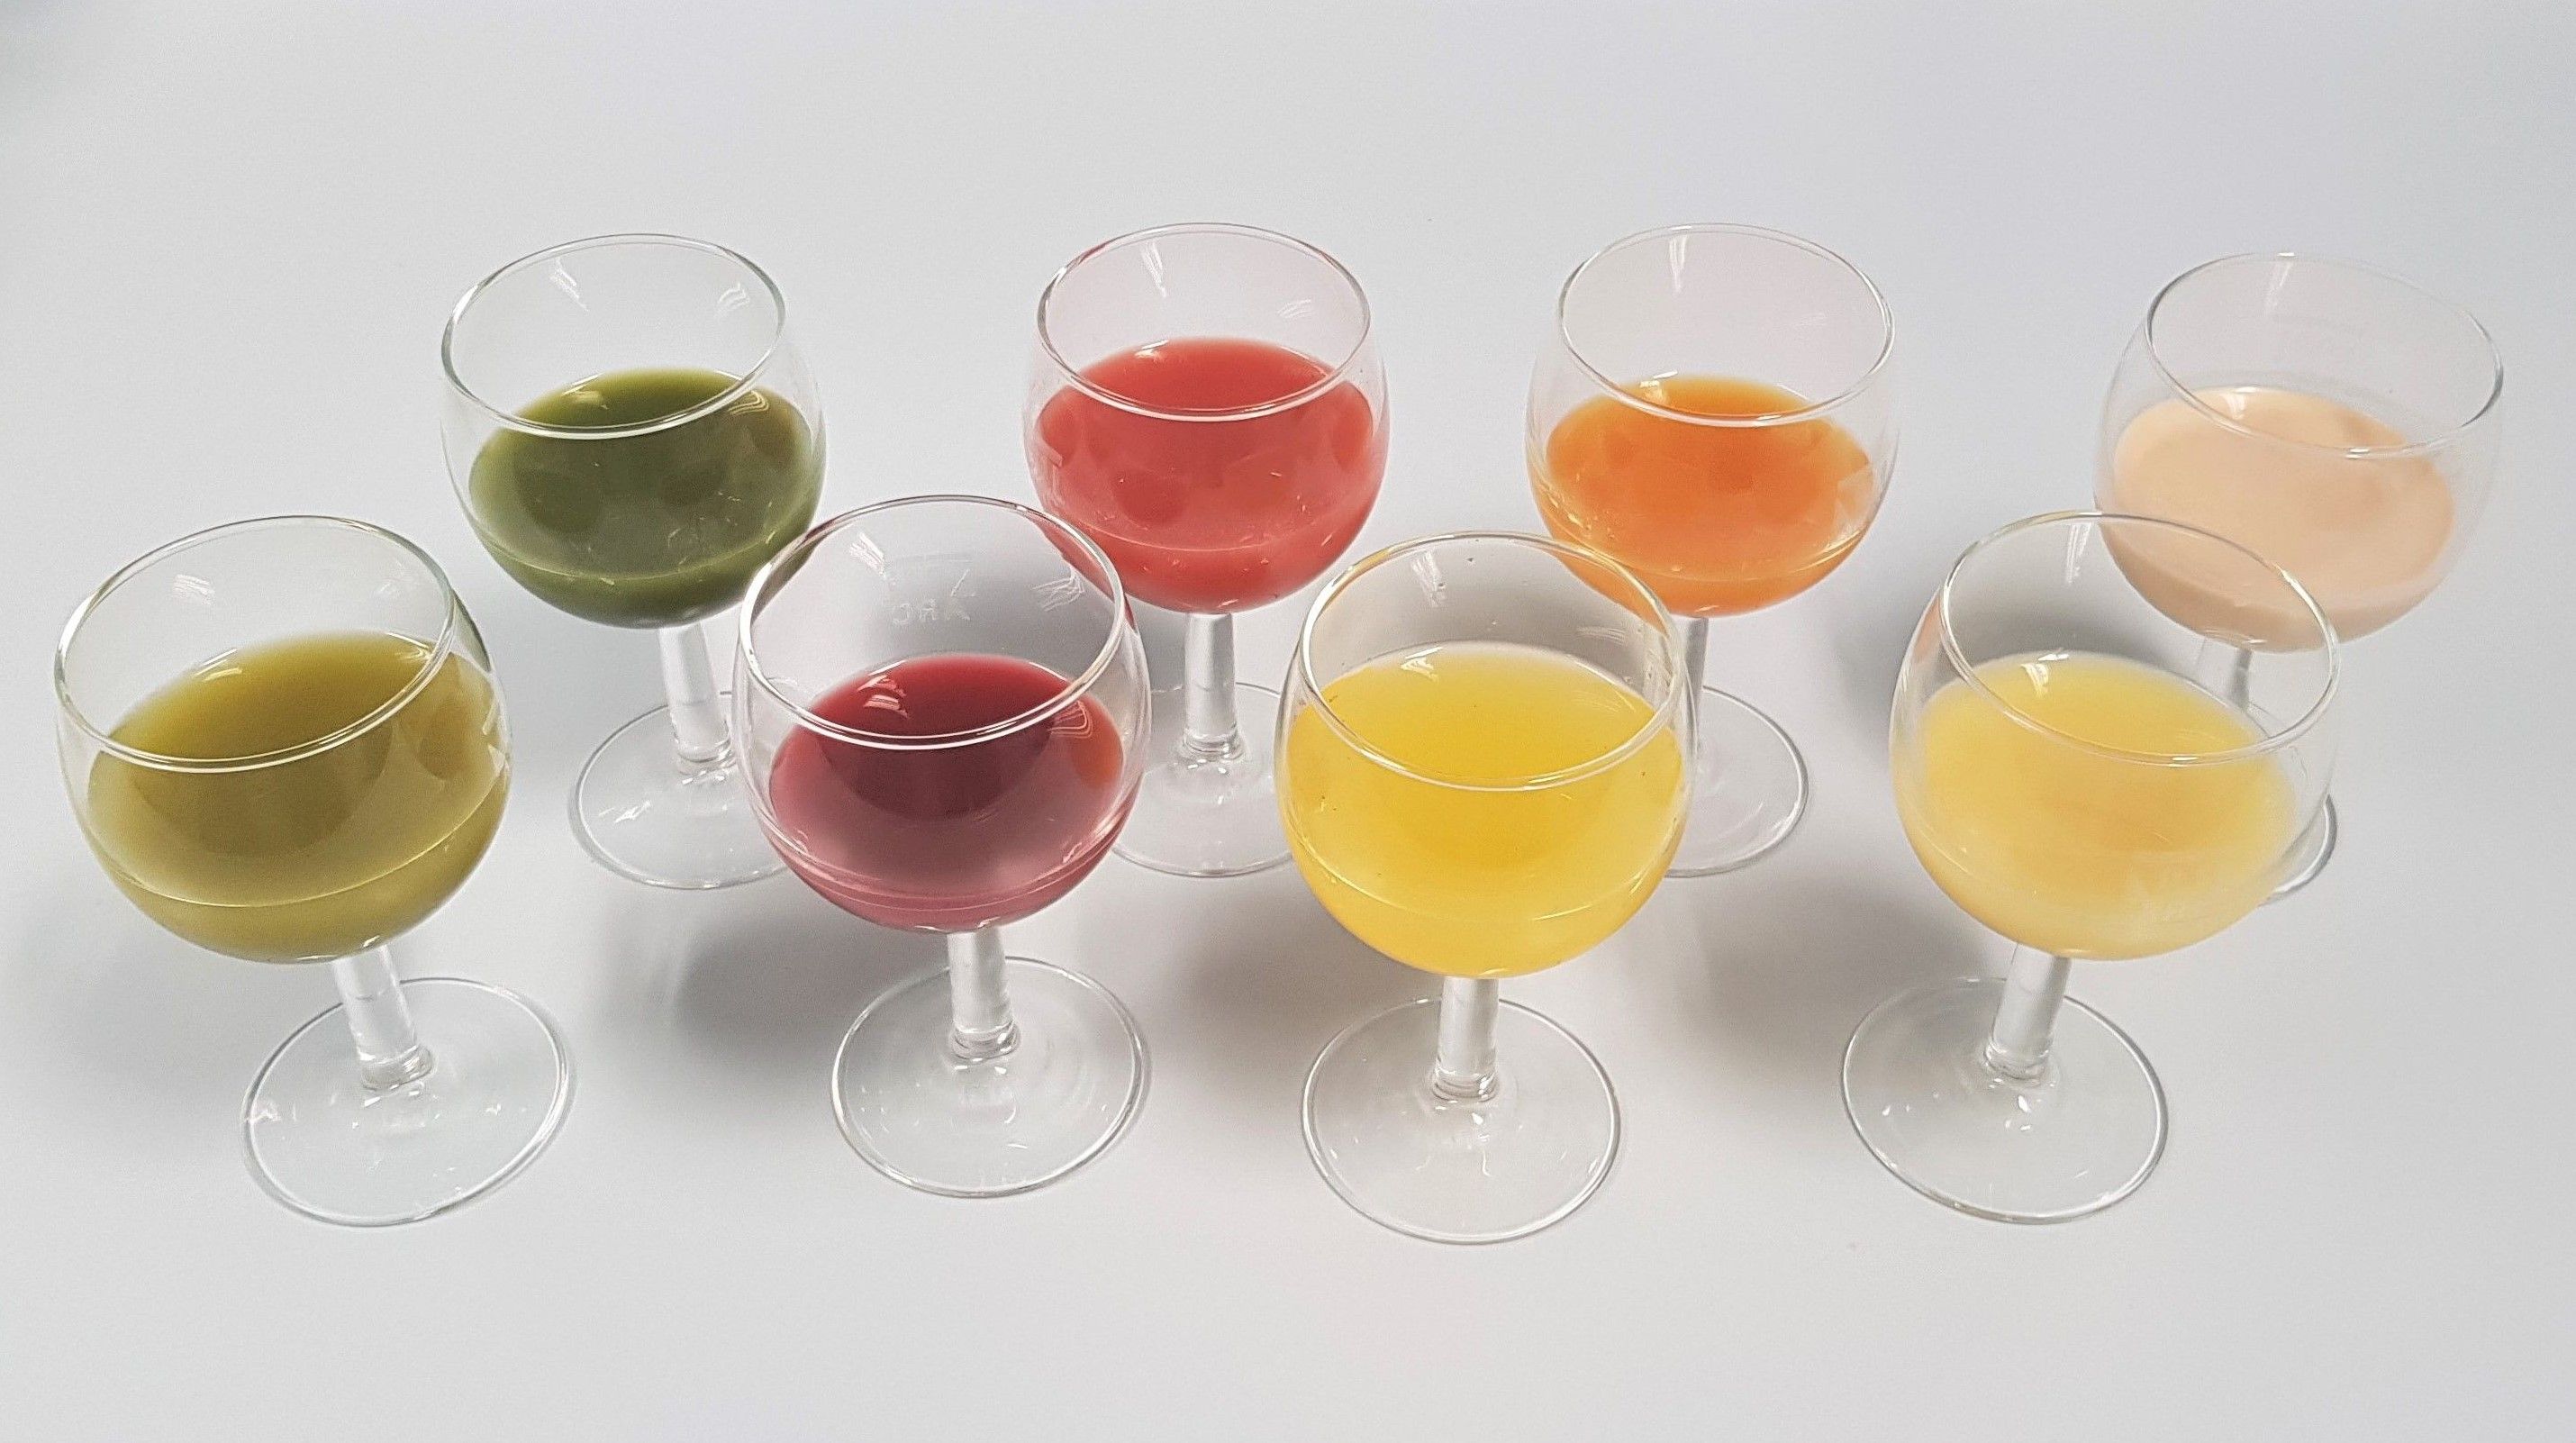 Das Bild zeigt acht Trinkgläser mit verschiedenfarbigen Smoothies gefüllt (vor allem grün, rot, gelb, orange)